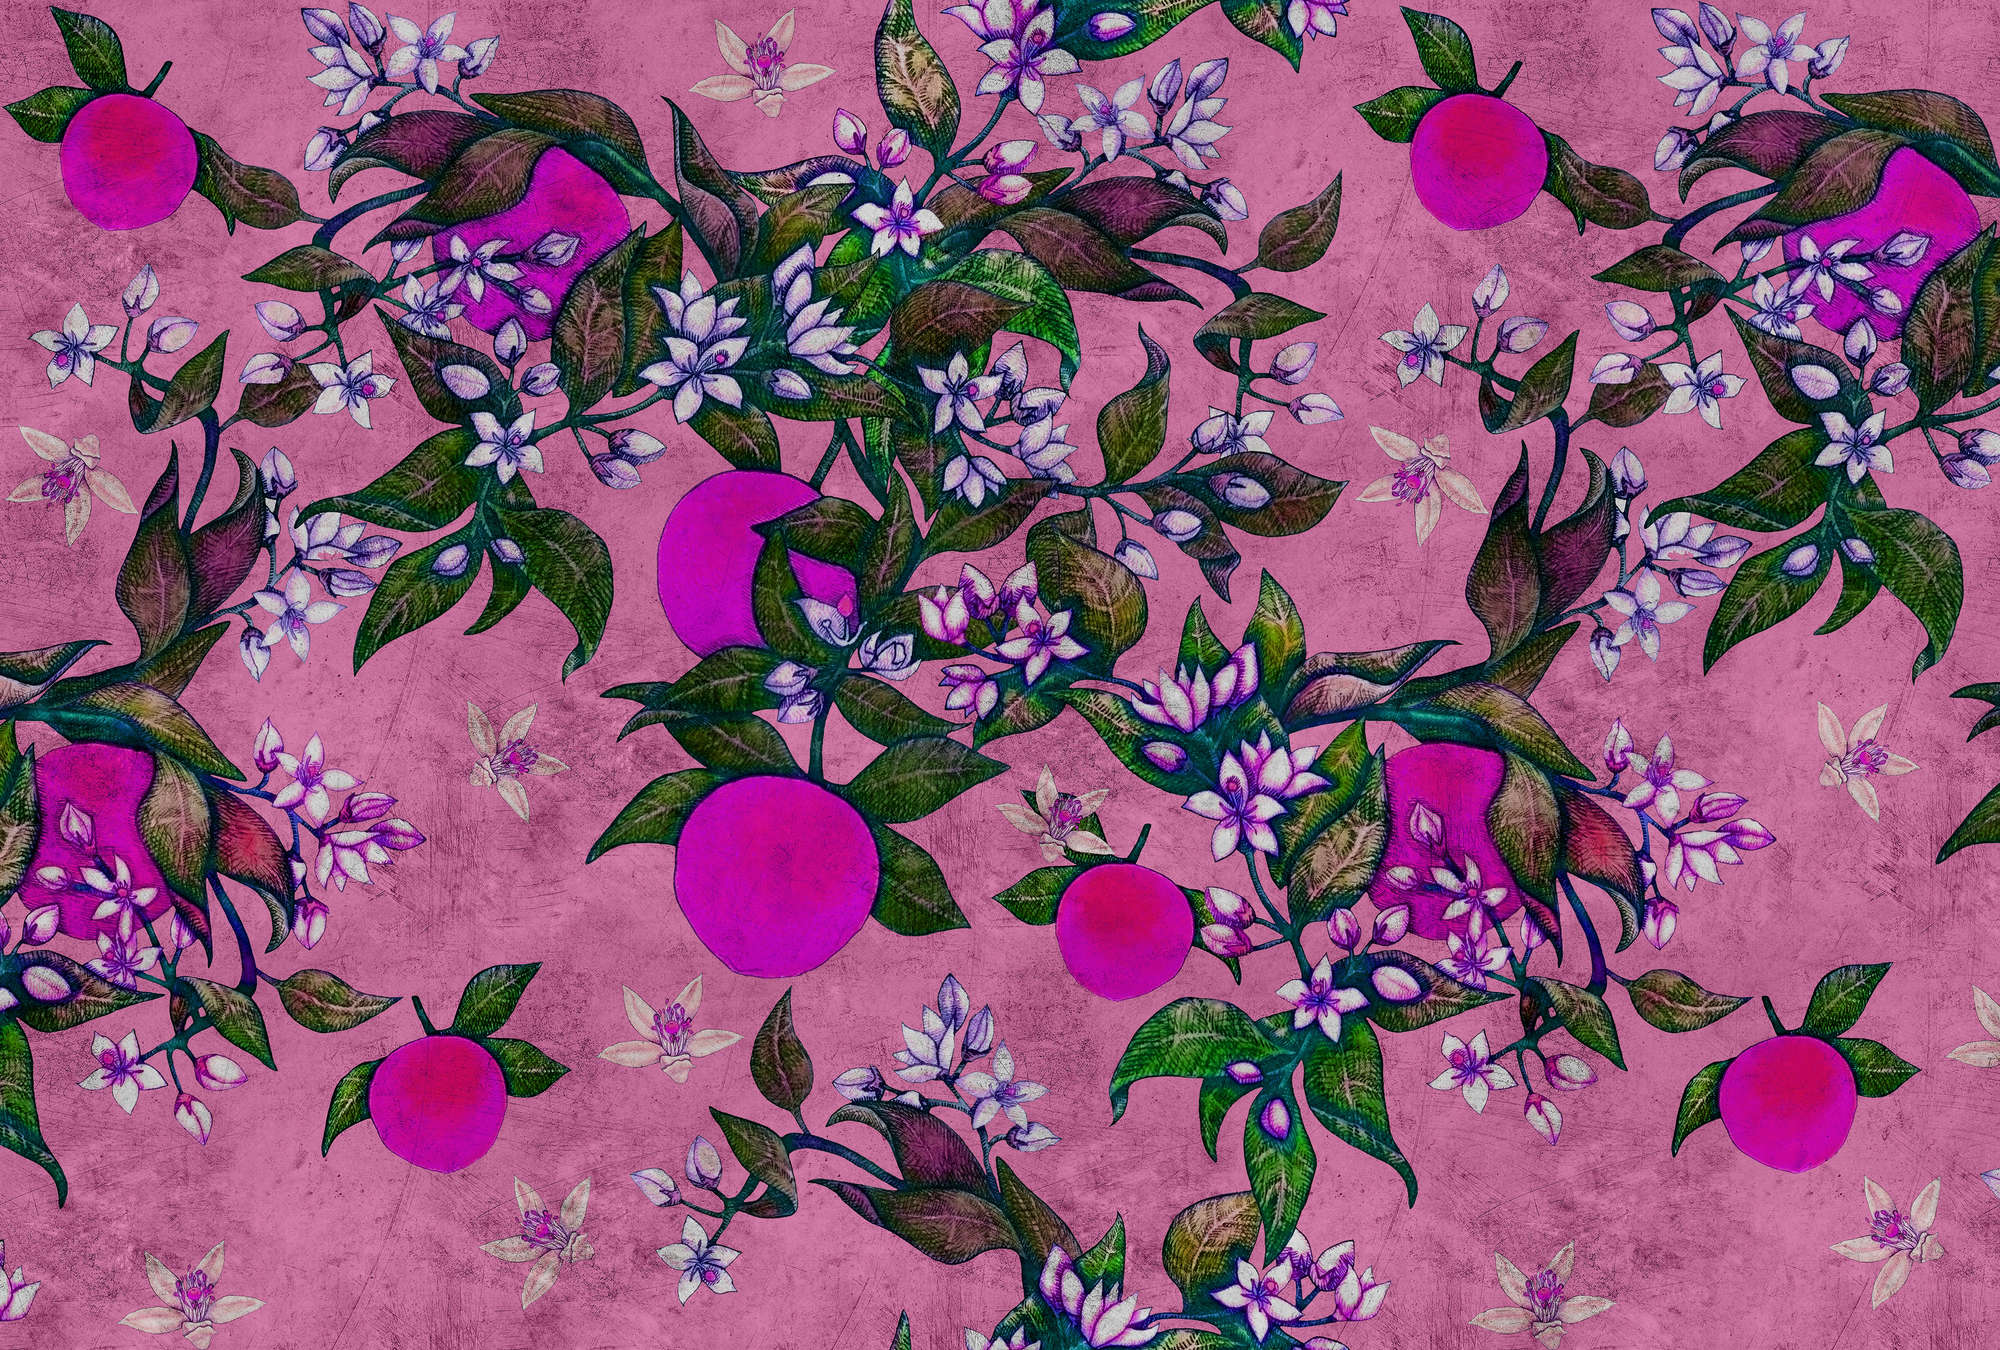             Grapefruit Tree 2 - Digital behang met grapefruit & bloem ontwerp in krasse textuur - Roze, Paars | Textured Non-woven
        